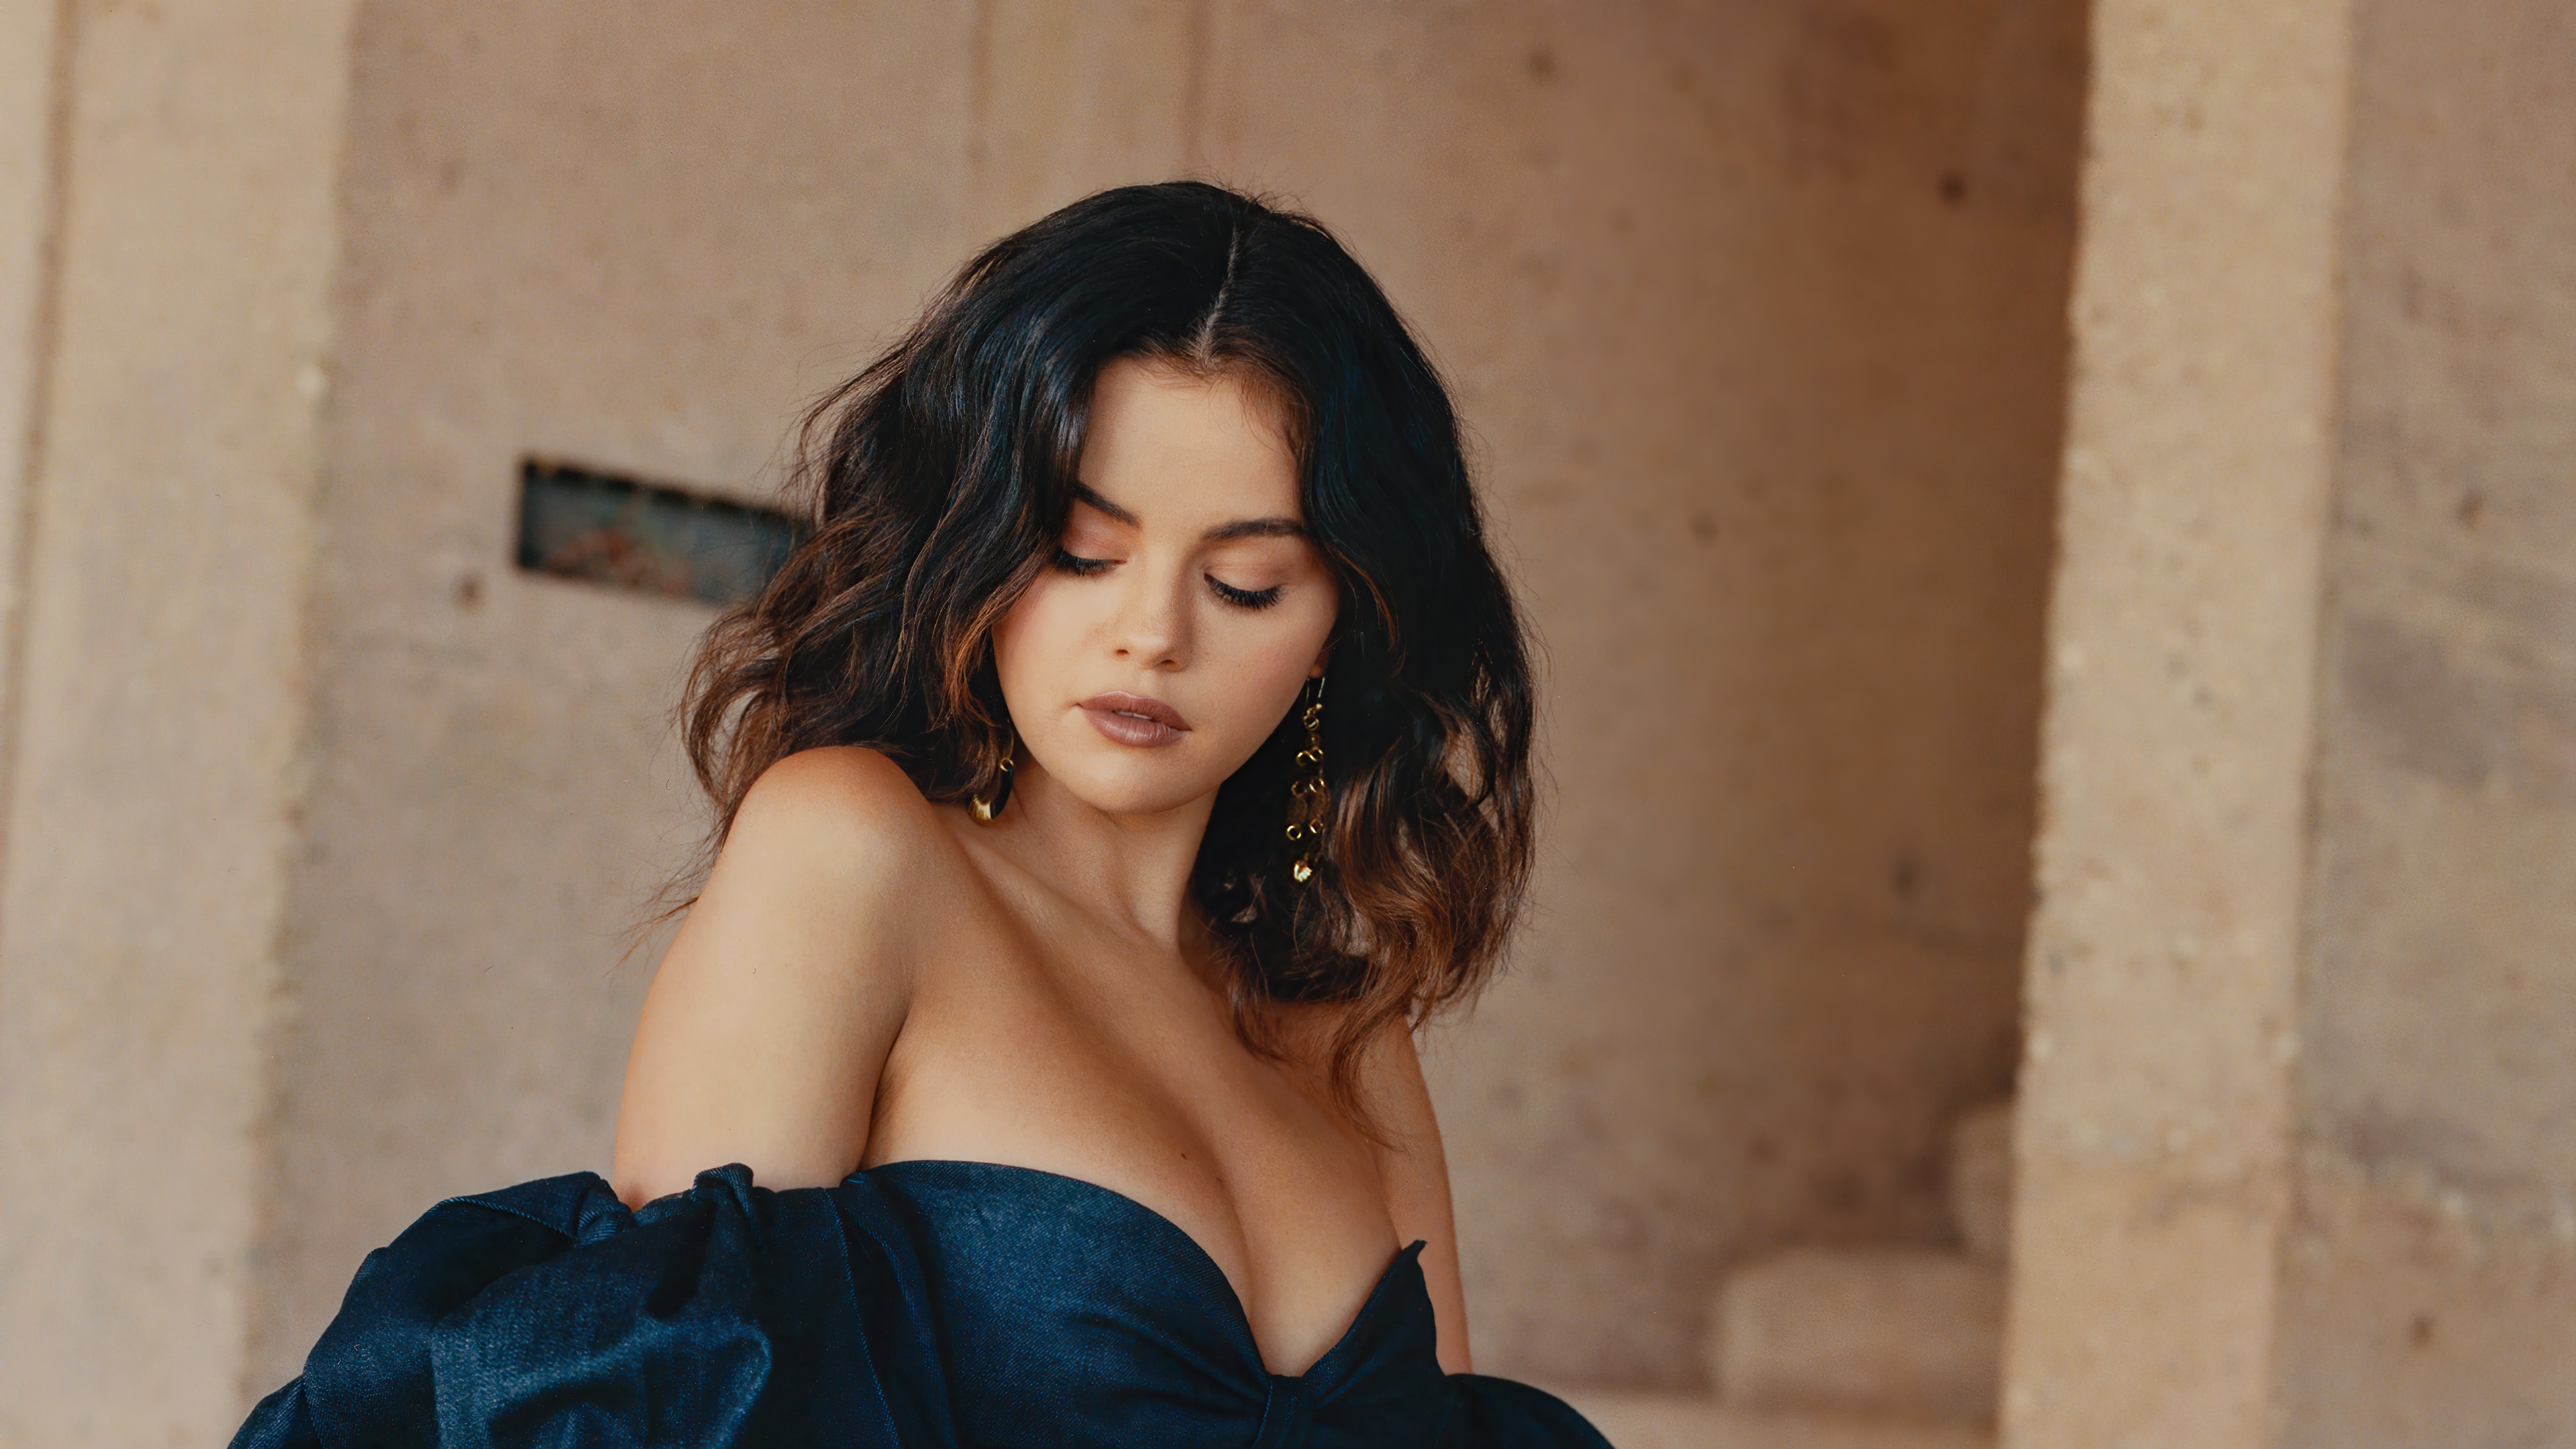 Selena Gomez 2017 Instyle Photoshoot Wallpapers